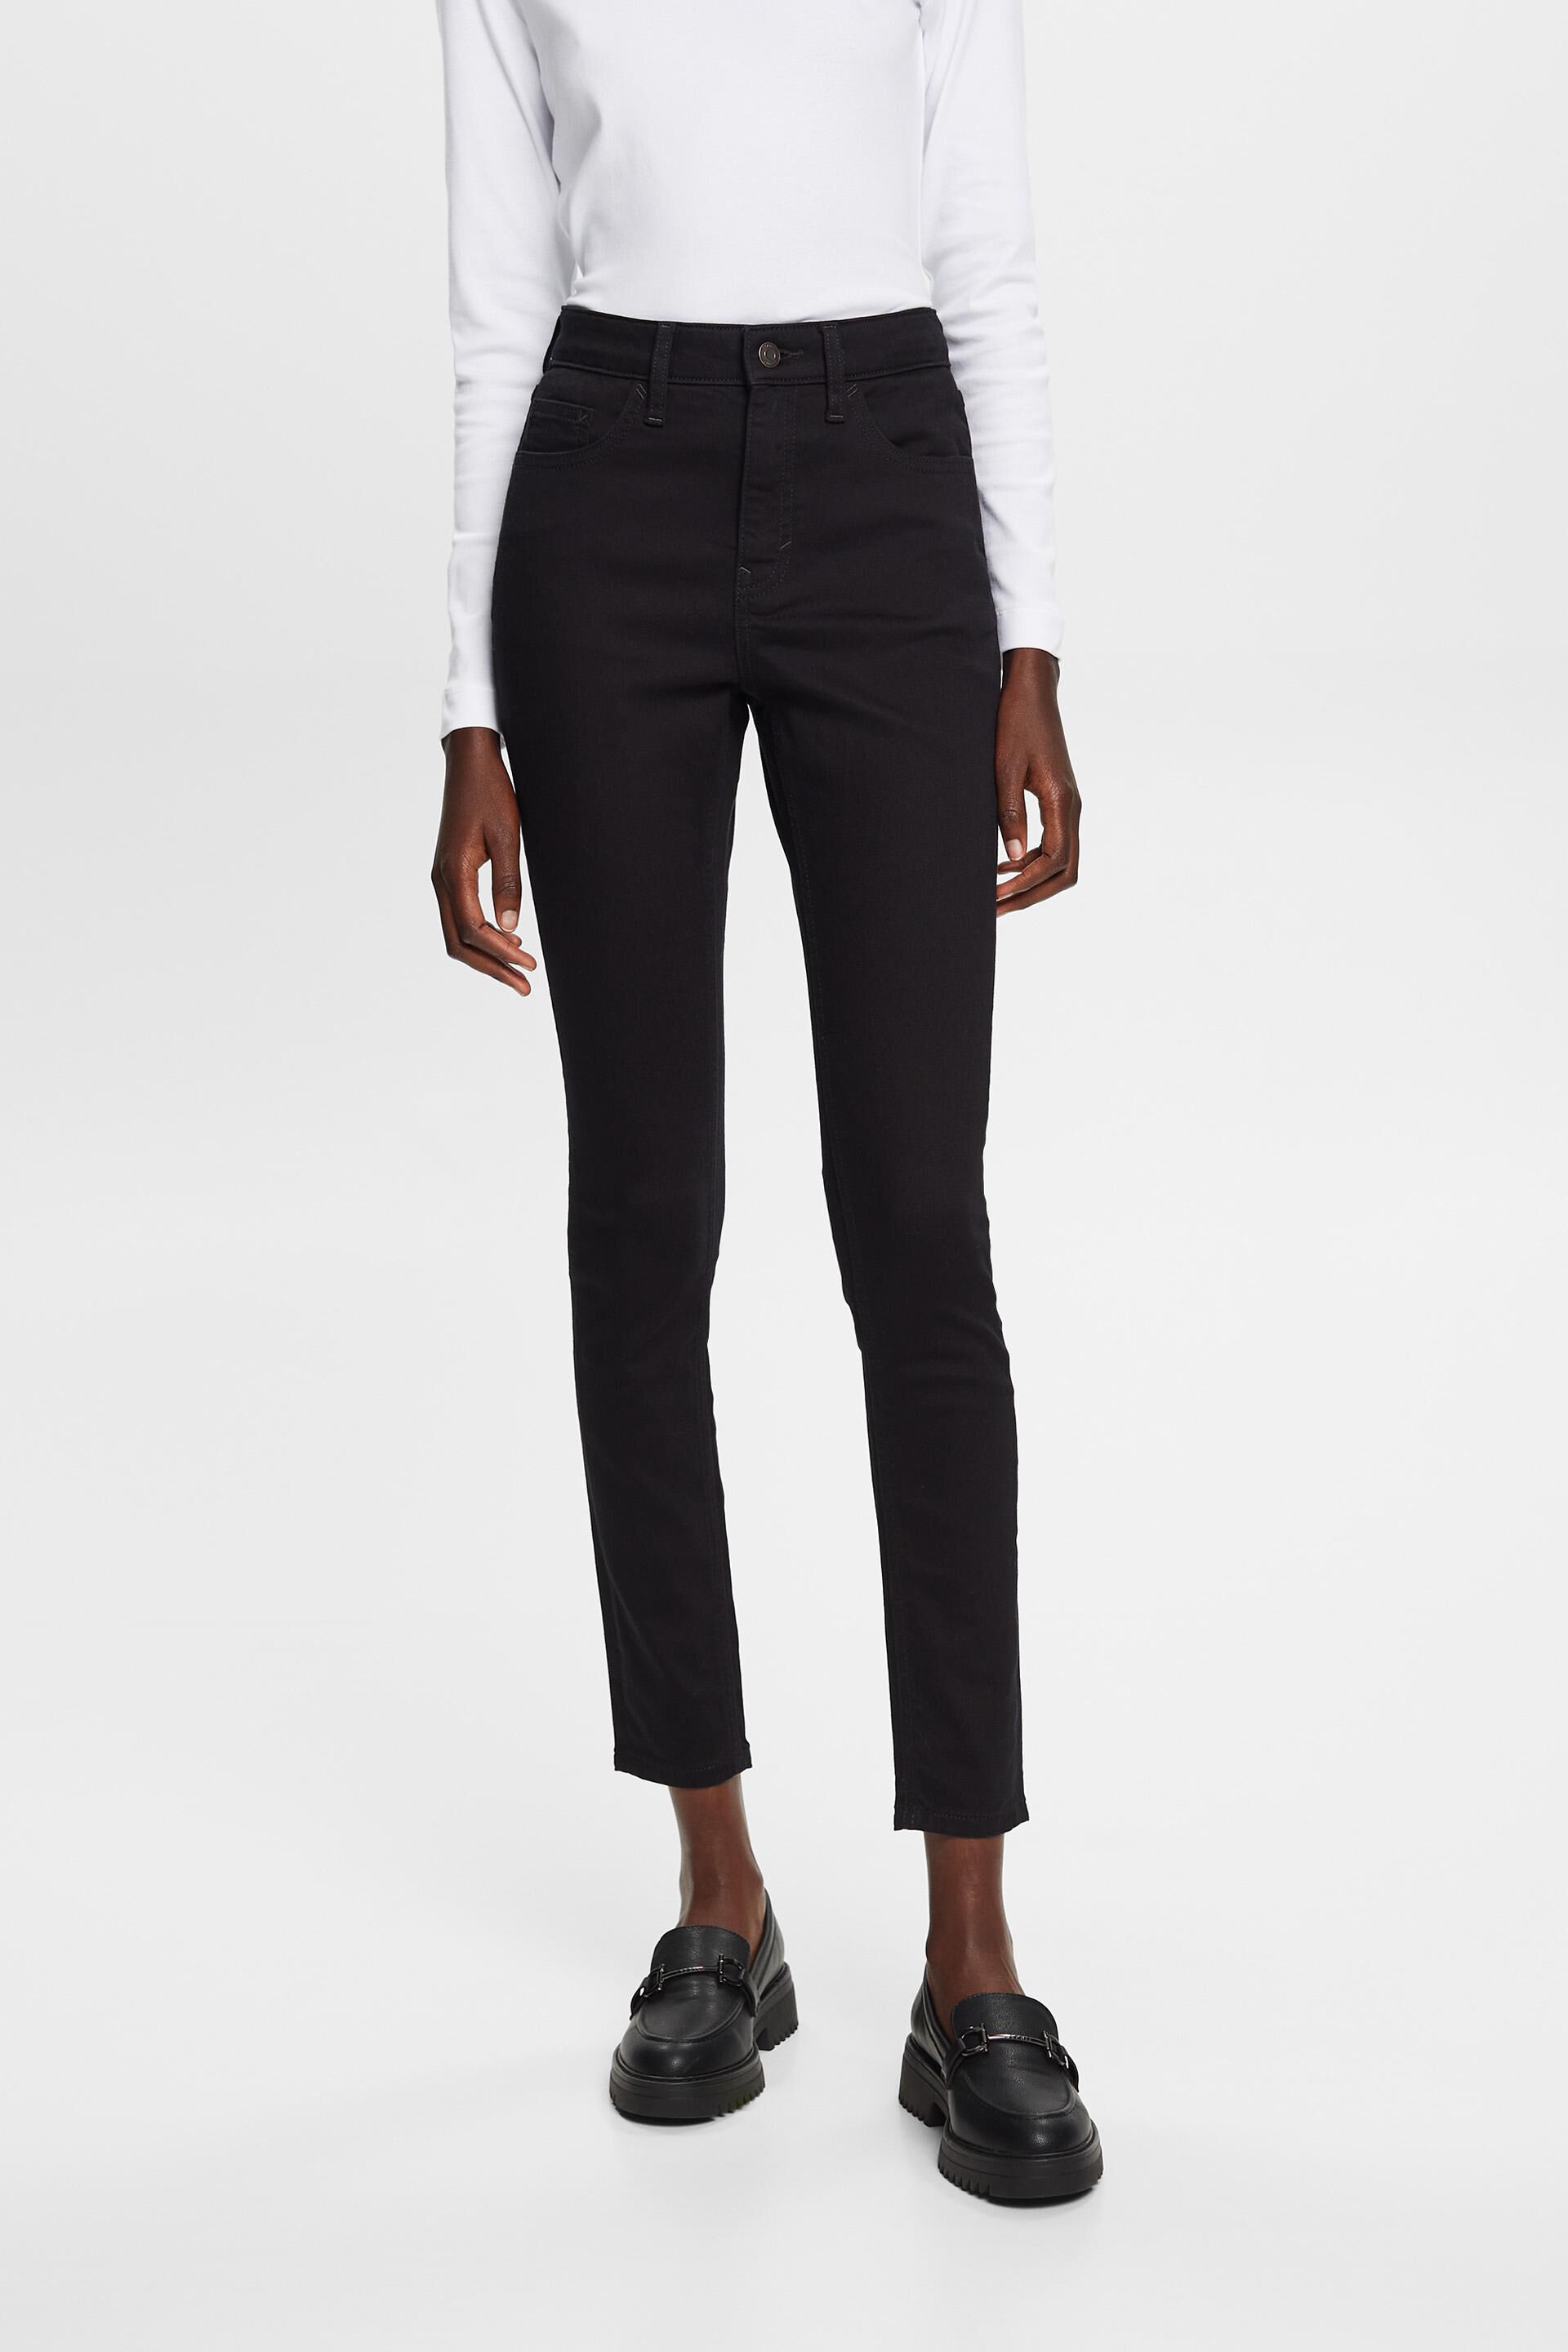 Esprit Non-fade cotton skinny jeans, stretch